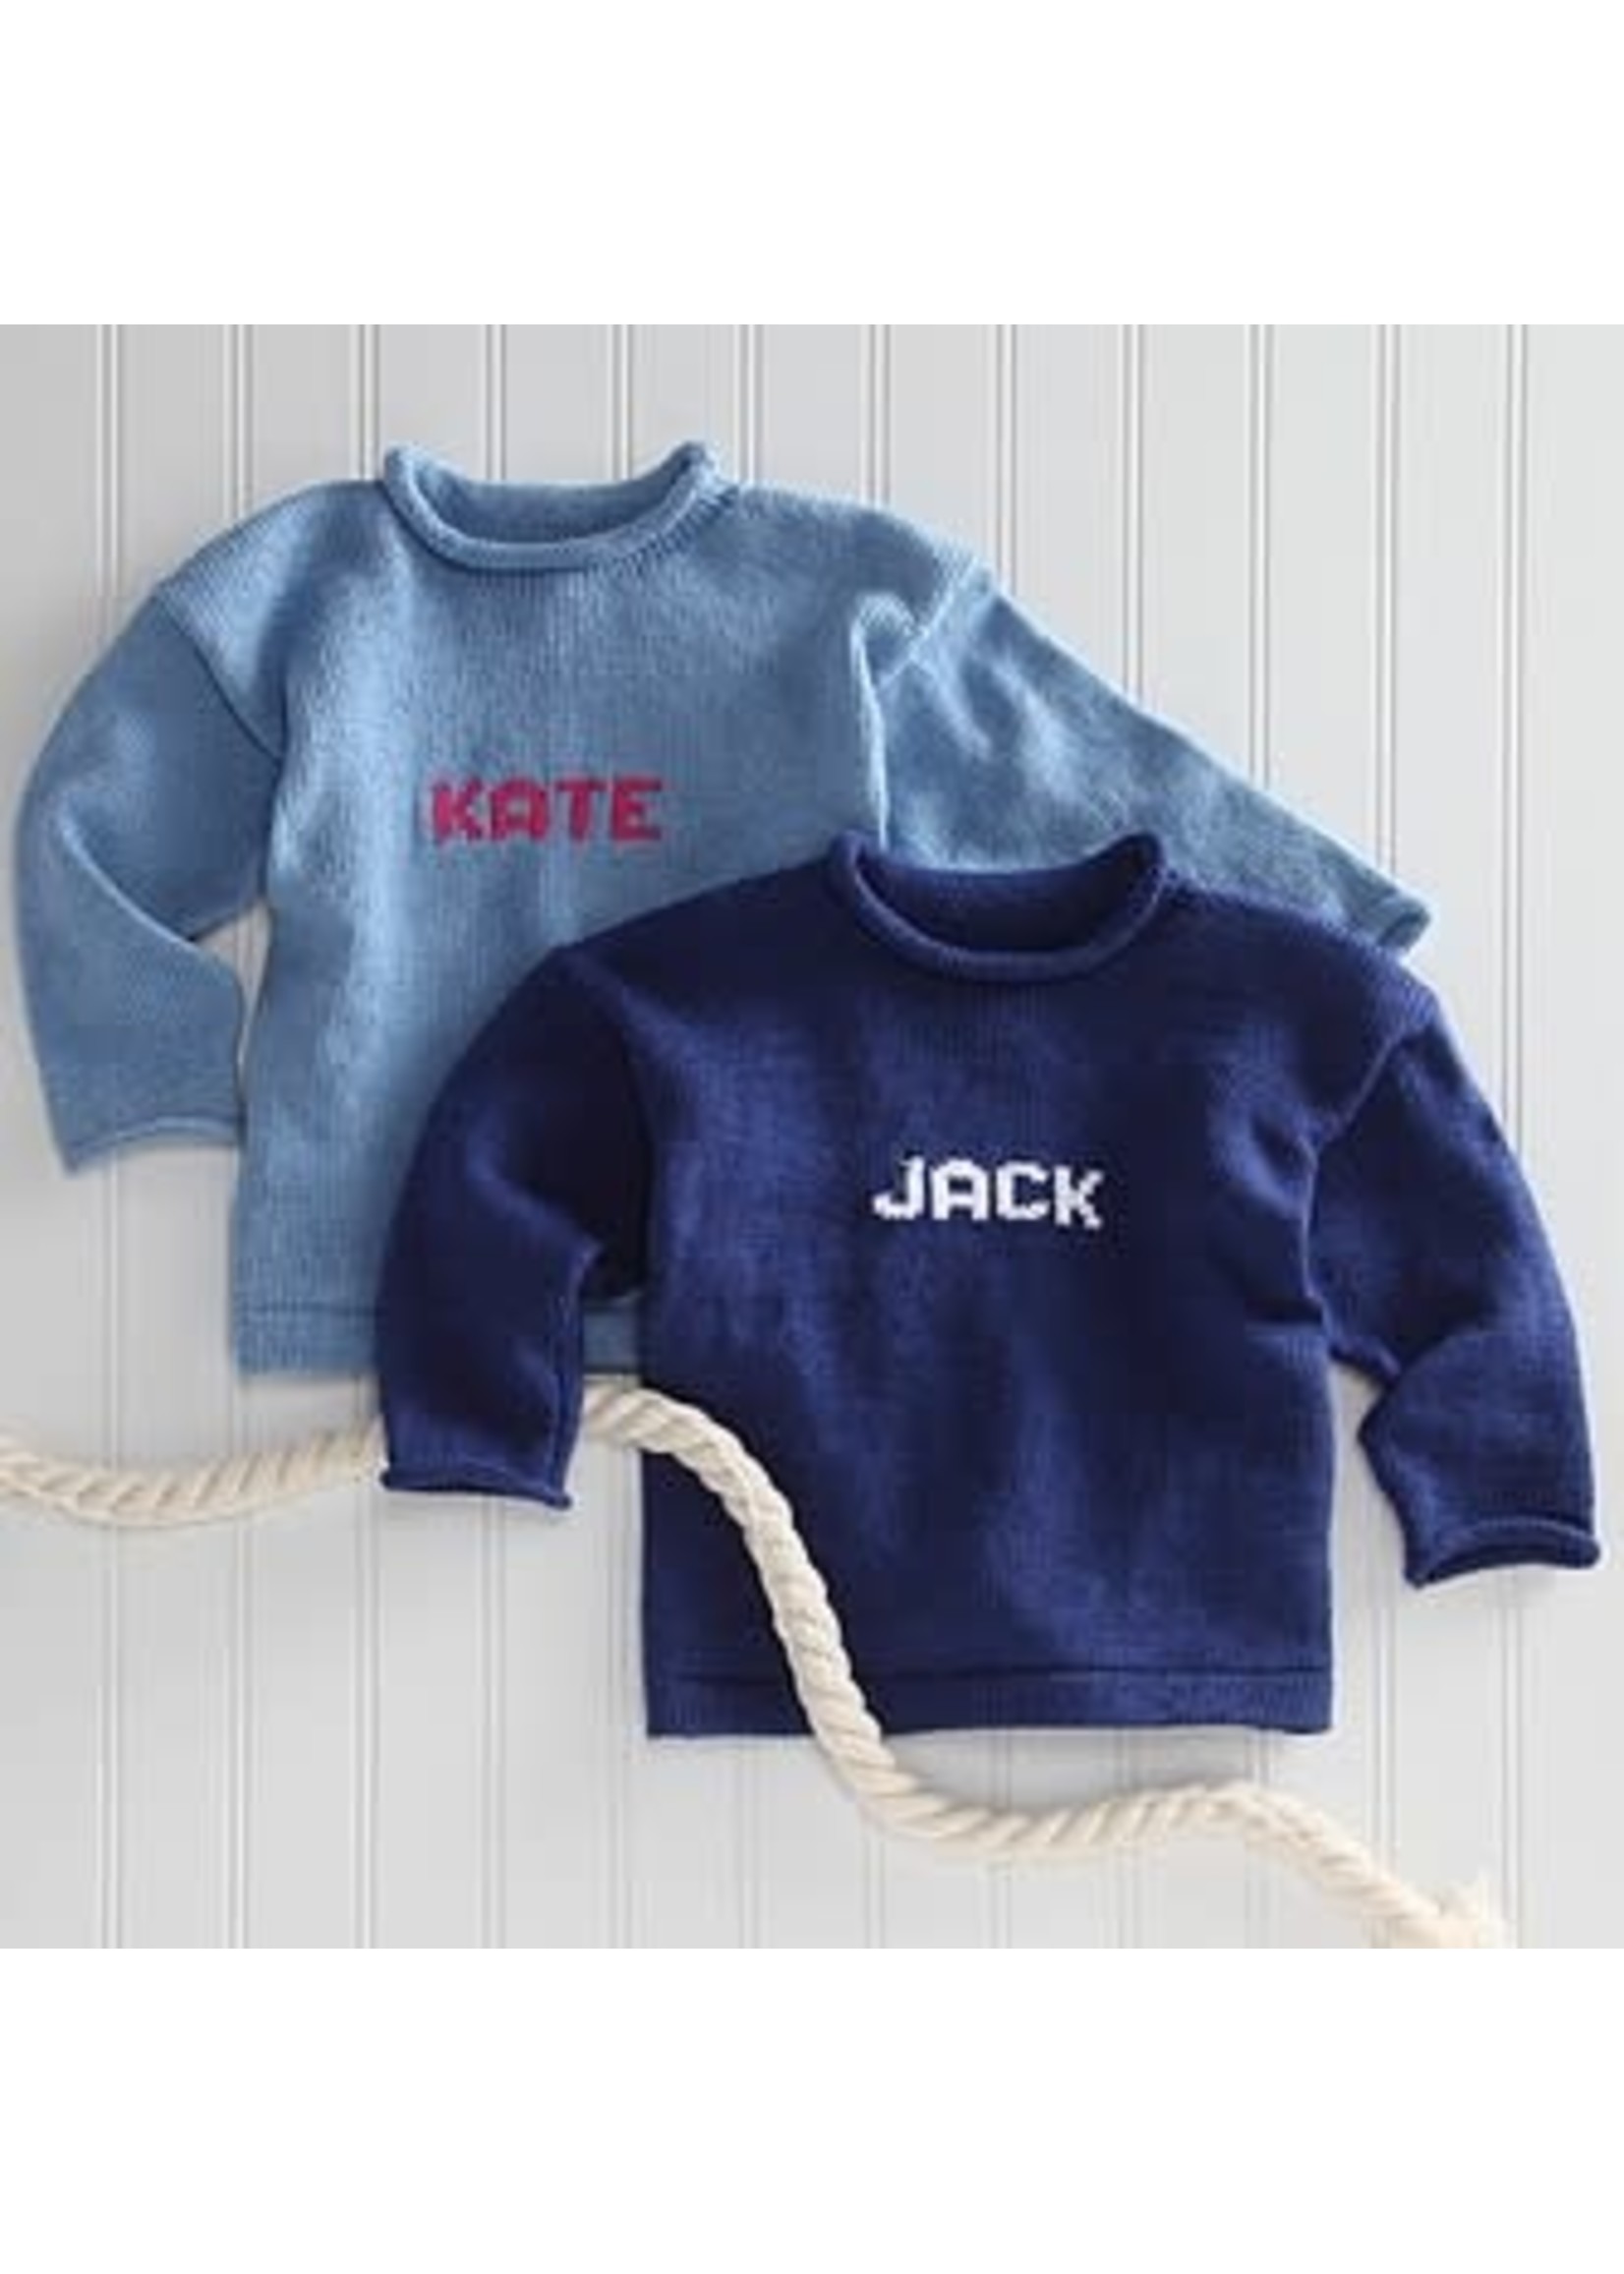 Mjk knits MJK Name Sweater